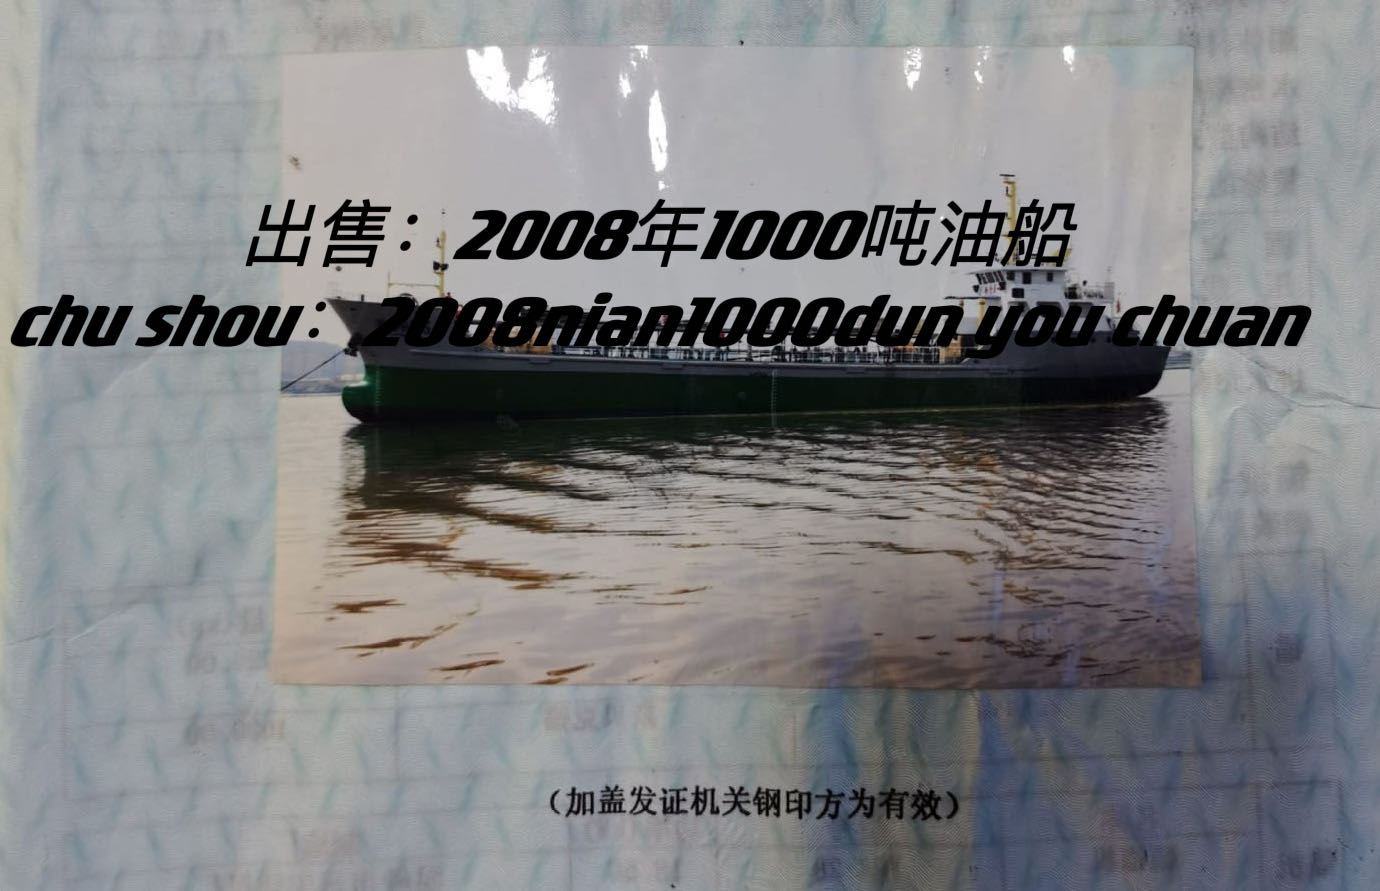 出售2008年1000吨油船